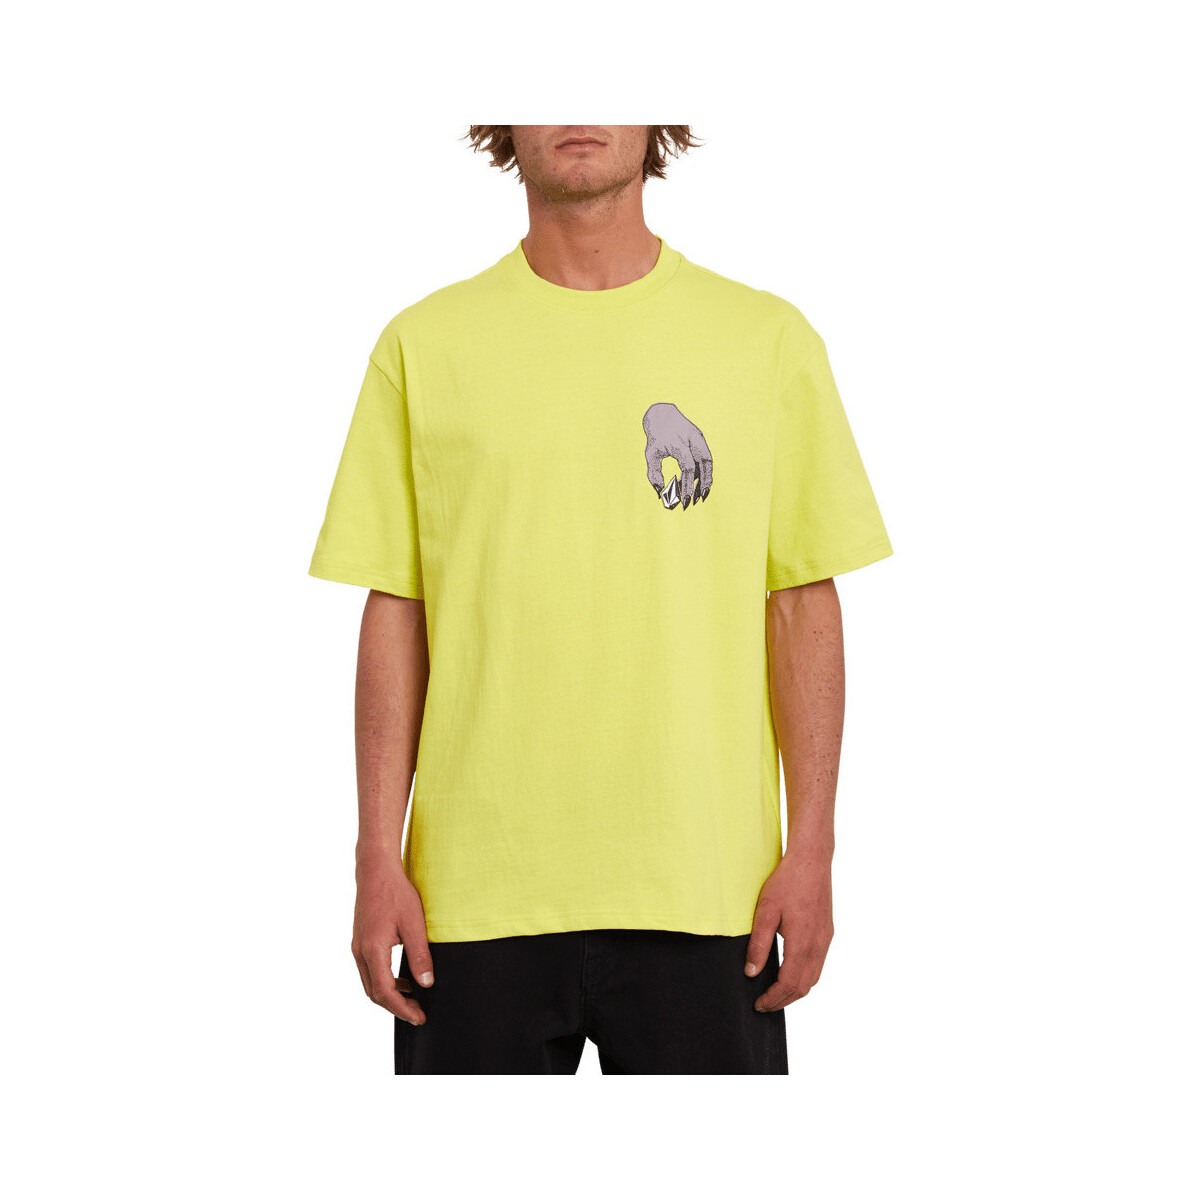 Vêtements Homme T-shirts manches courtes Volcom Stone Grab Lse Ss Limeade Jaune